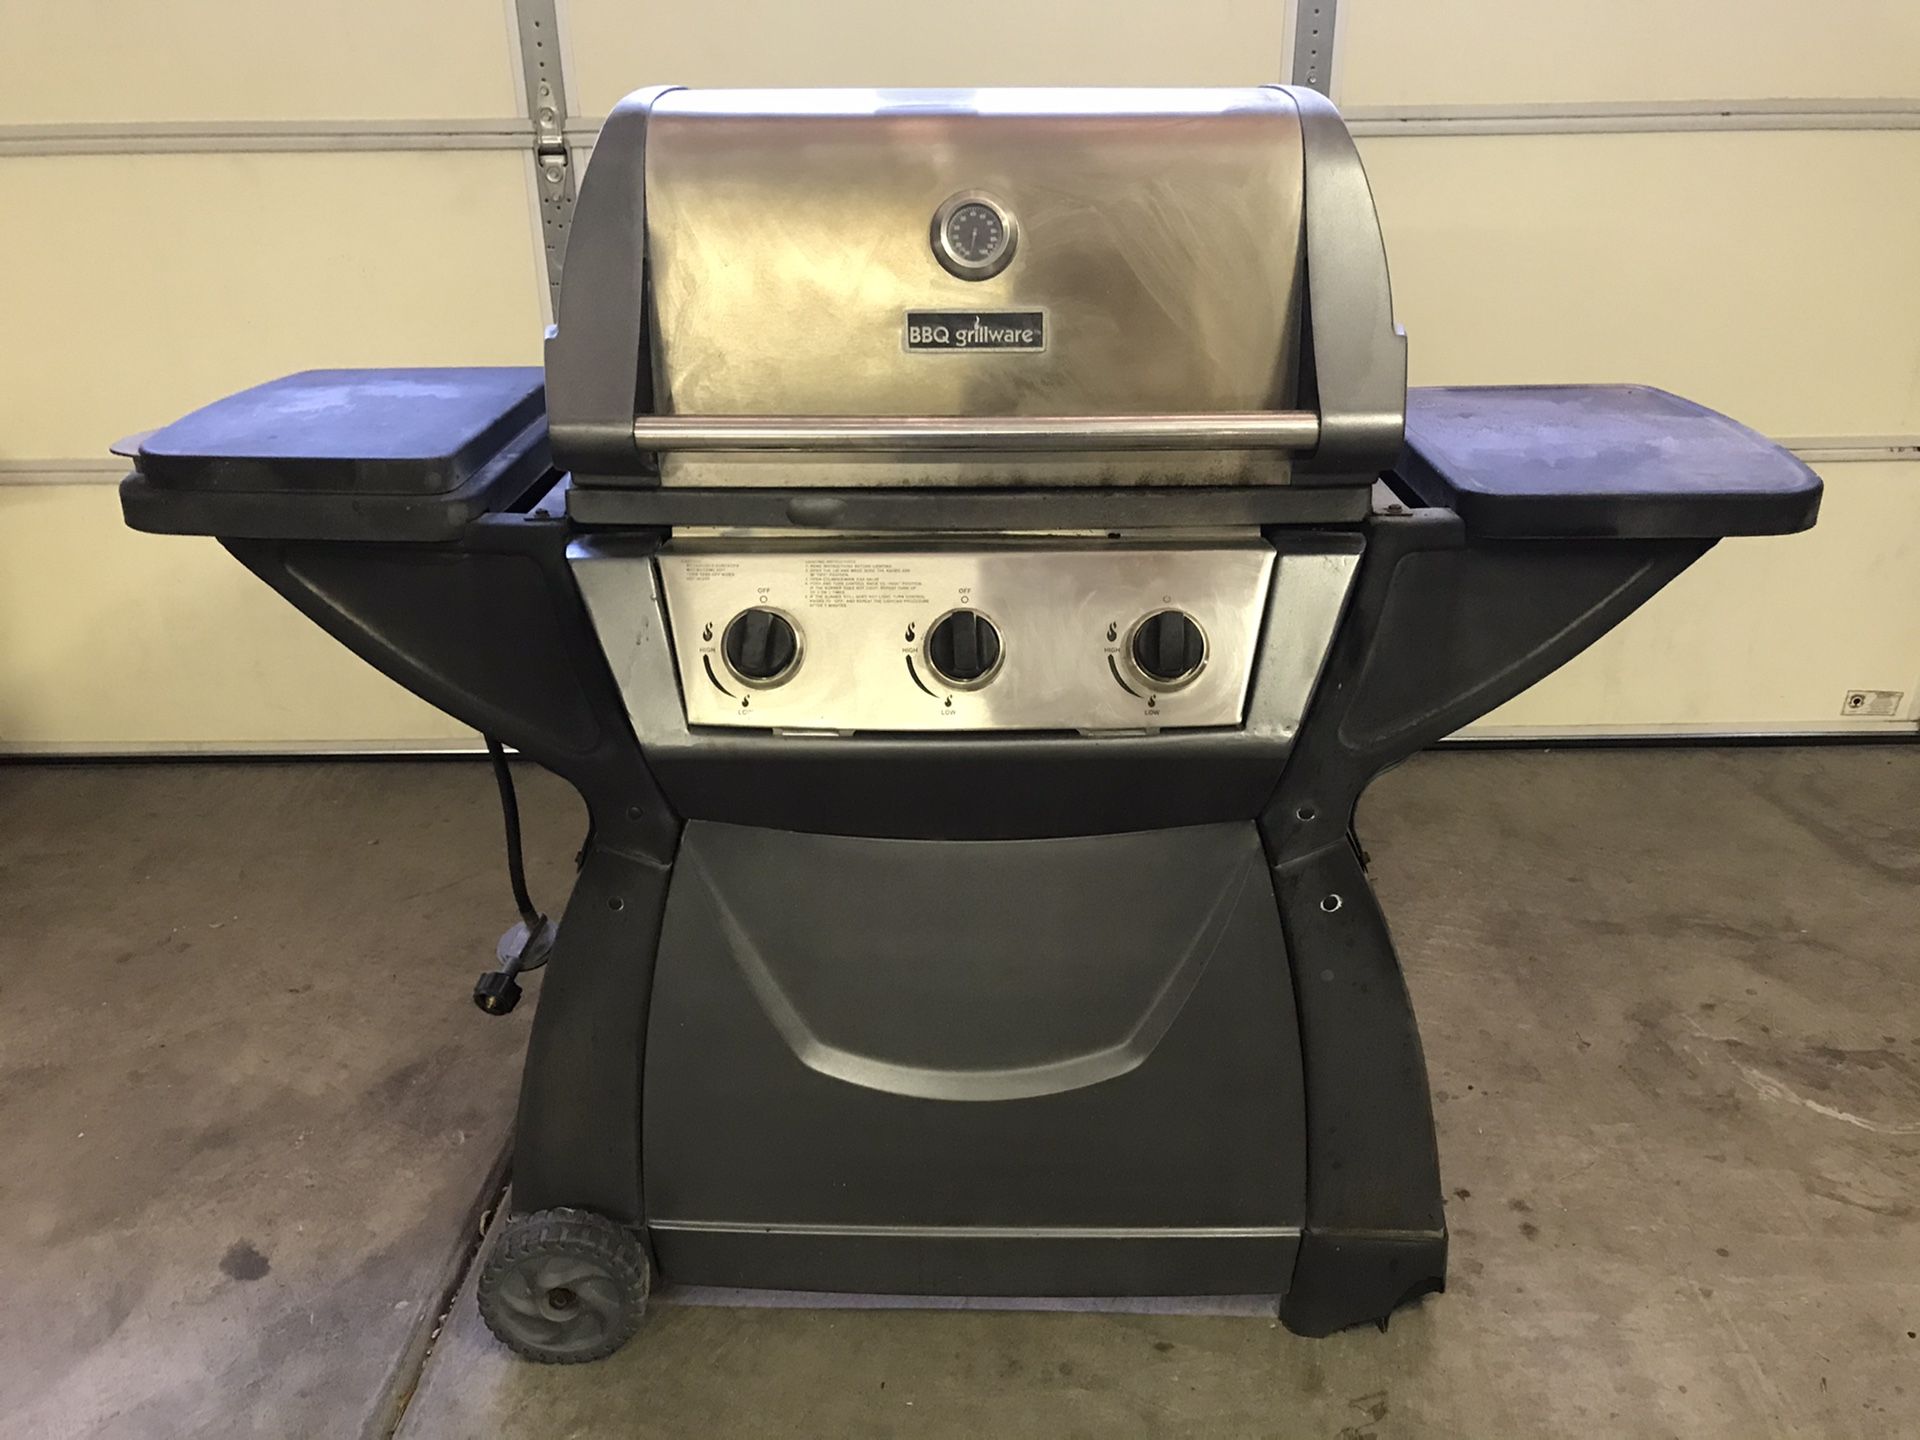 BBQ Grill - 3 burner with side burner